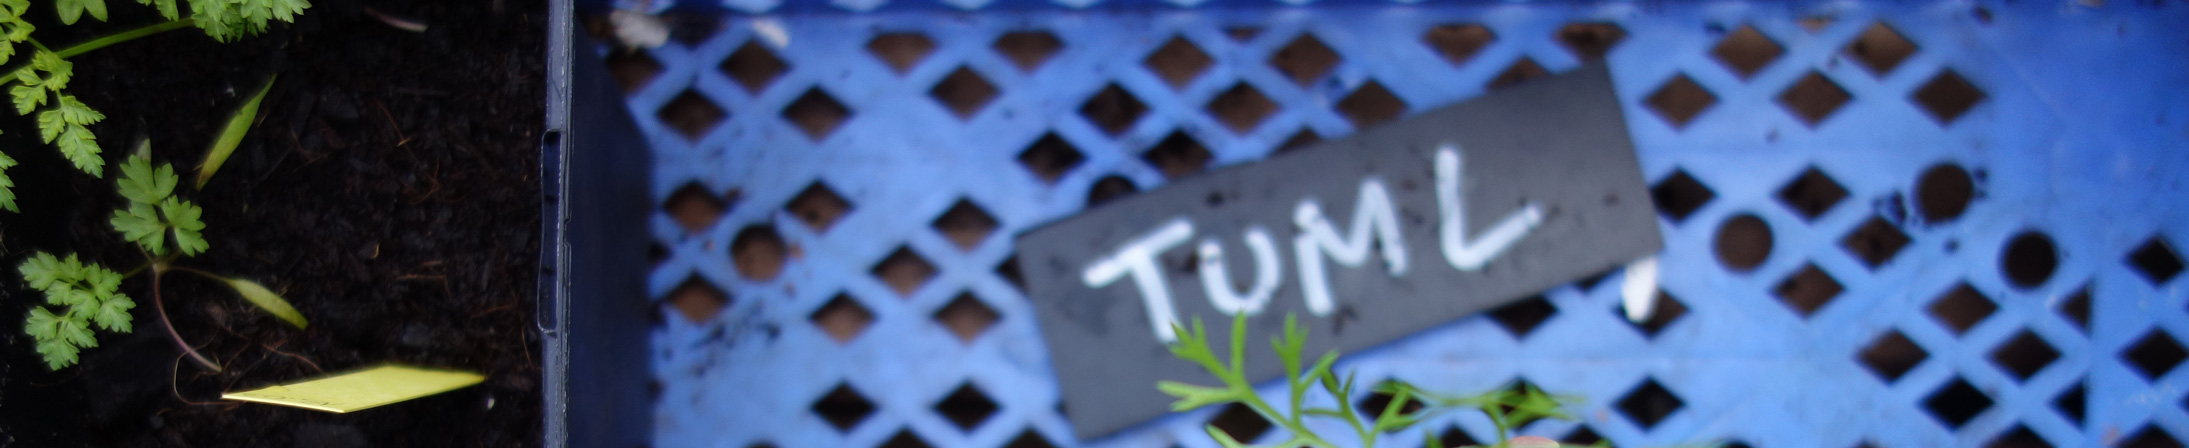 Banner mit einer blauen Kunstoff-Box, in der ein Schild mit der Aufschrift "Tuml" liegt und ein Topf mit Setzlingen steht.